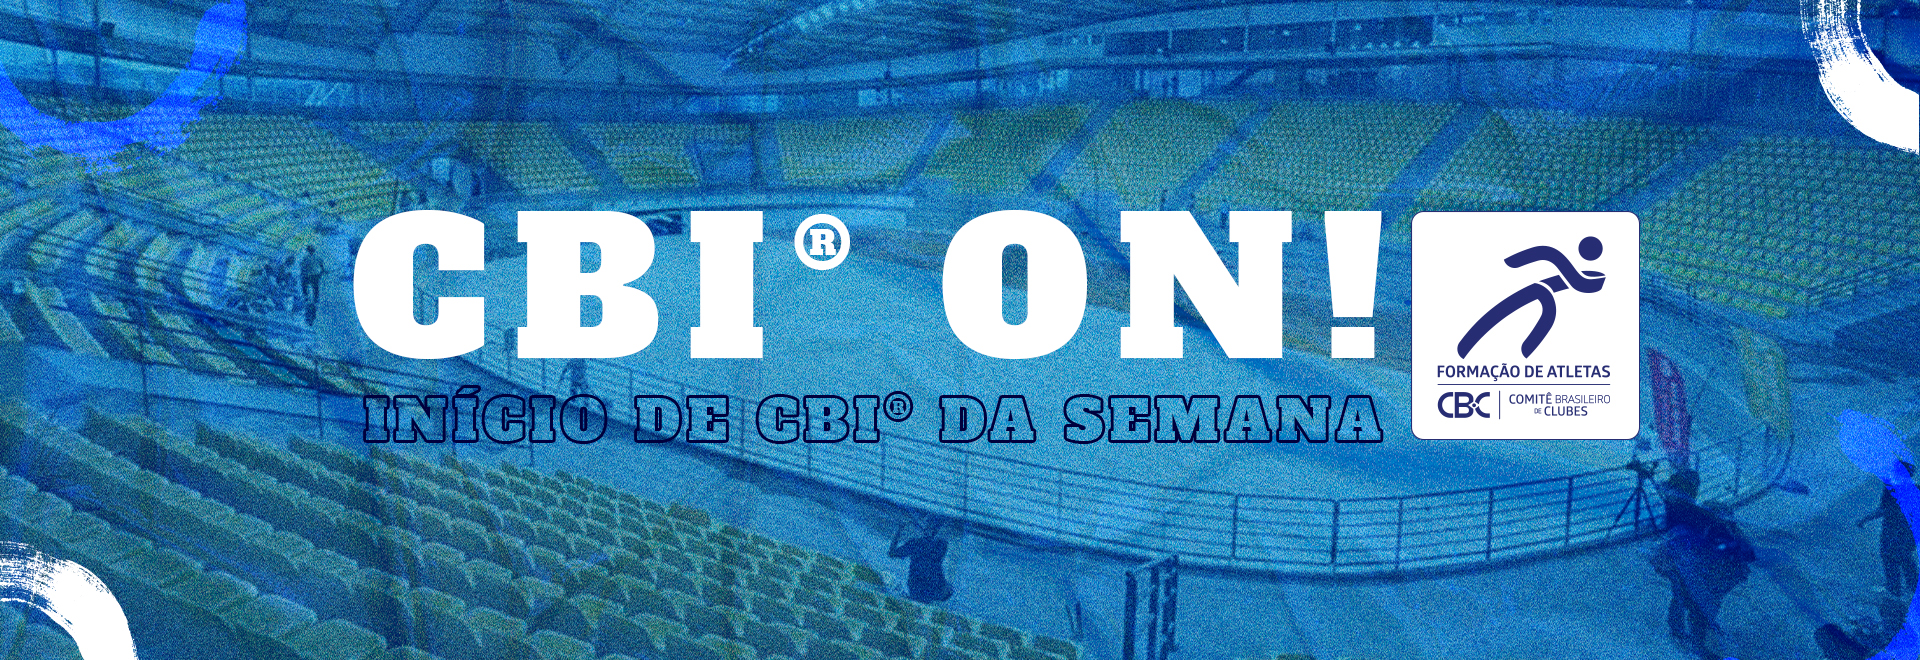 CBI® ON: Fase final do CBI® Superliga B começa nesta semana